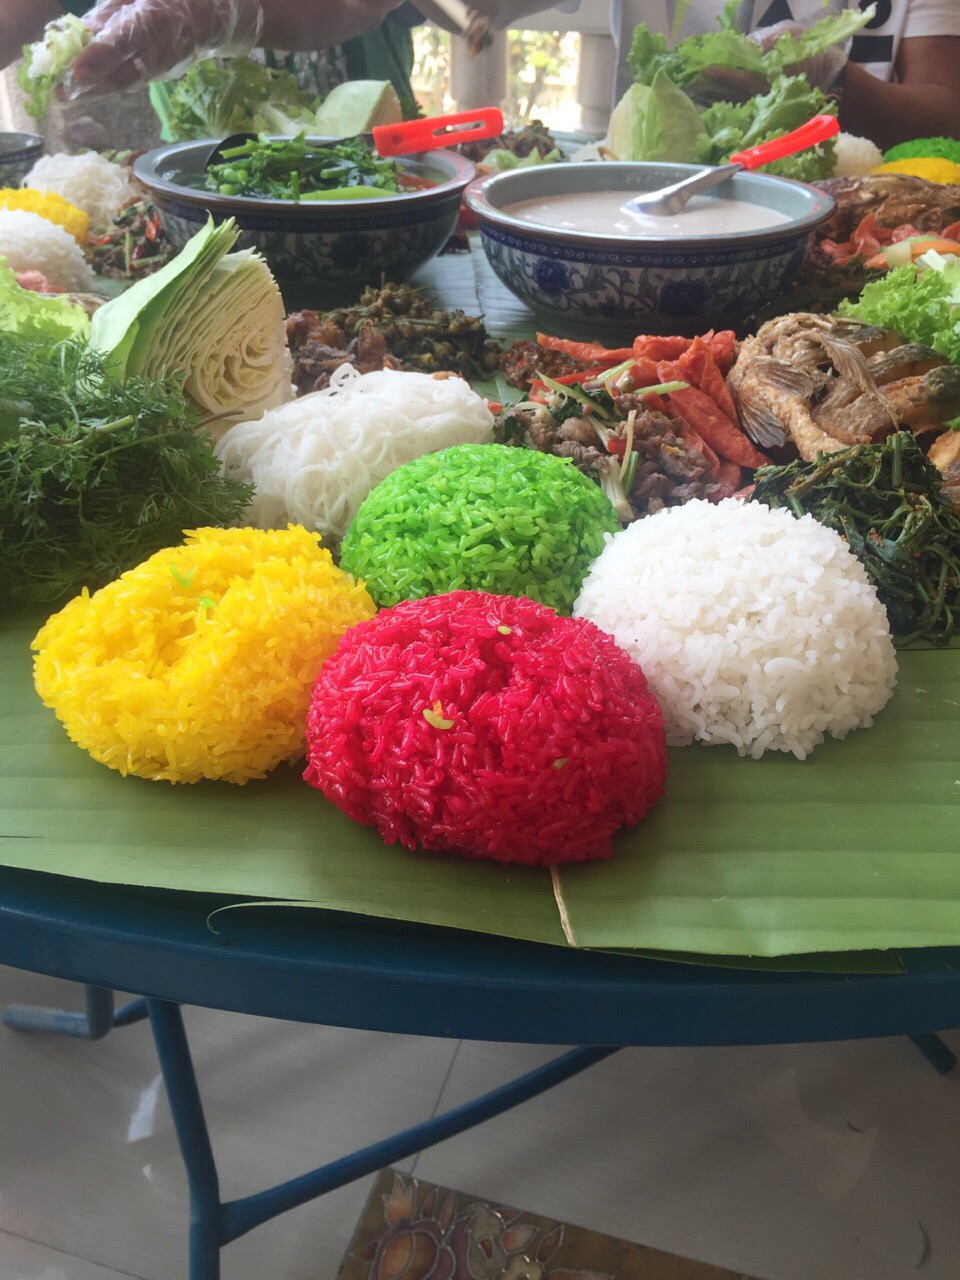 缅甸佤邦第一特区佤王宴，饭色全用可食野生植物汁液染成，伴烤鱼、生菜等用手抓吃，其中一盒白色的汤是秘密